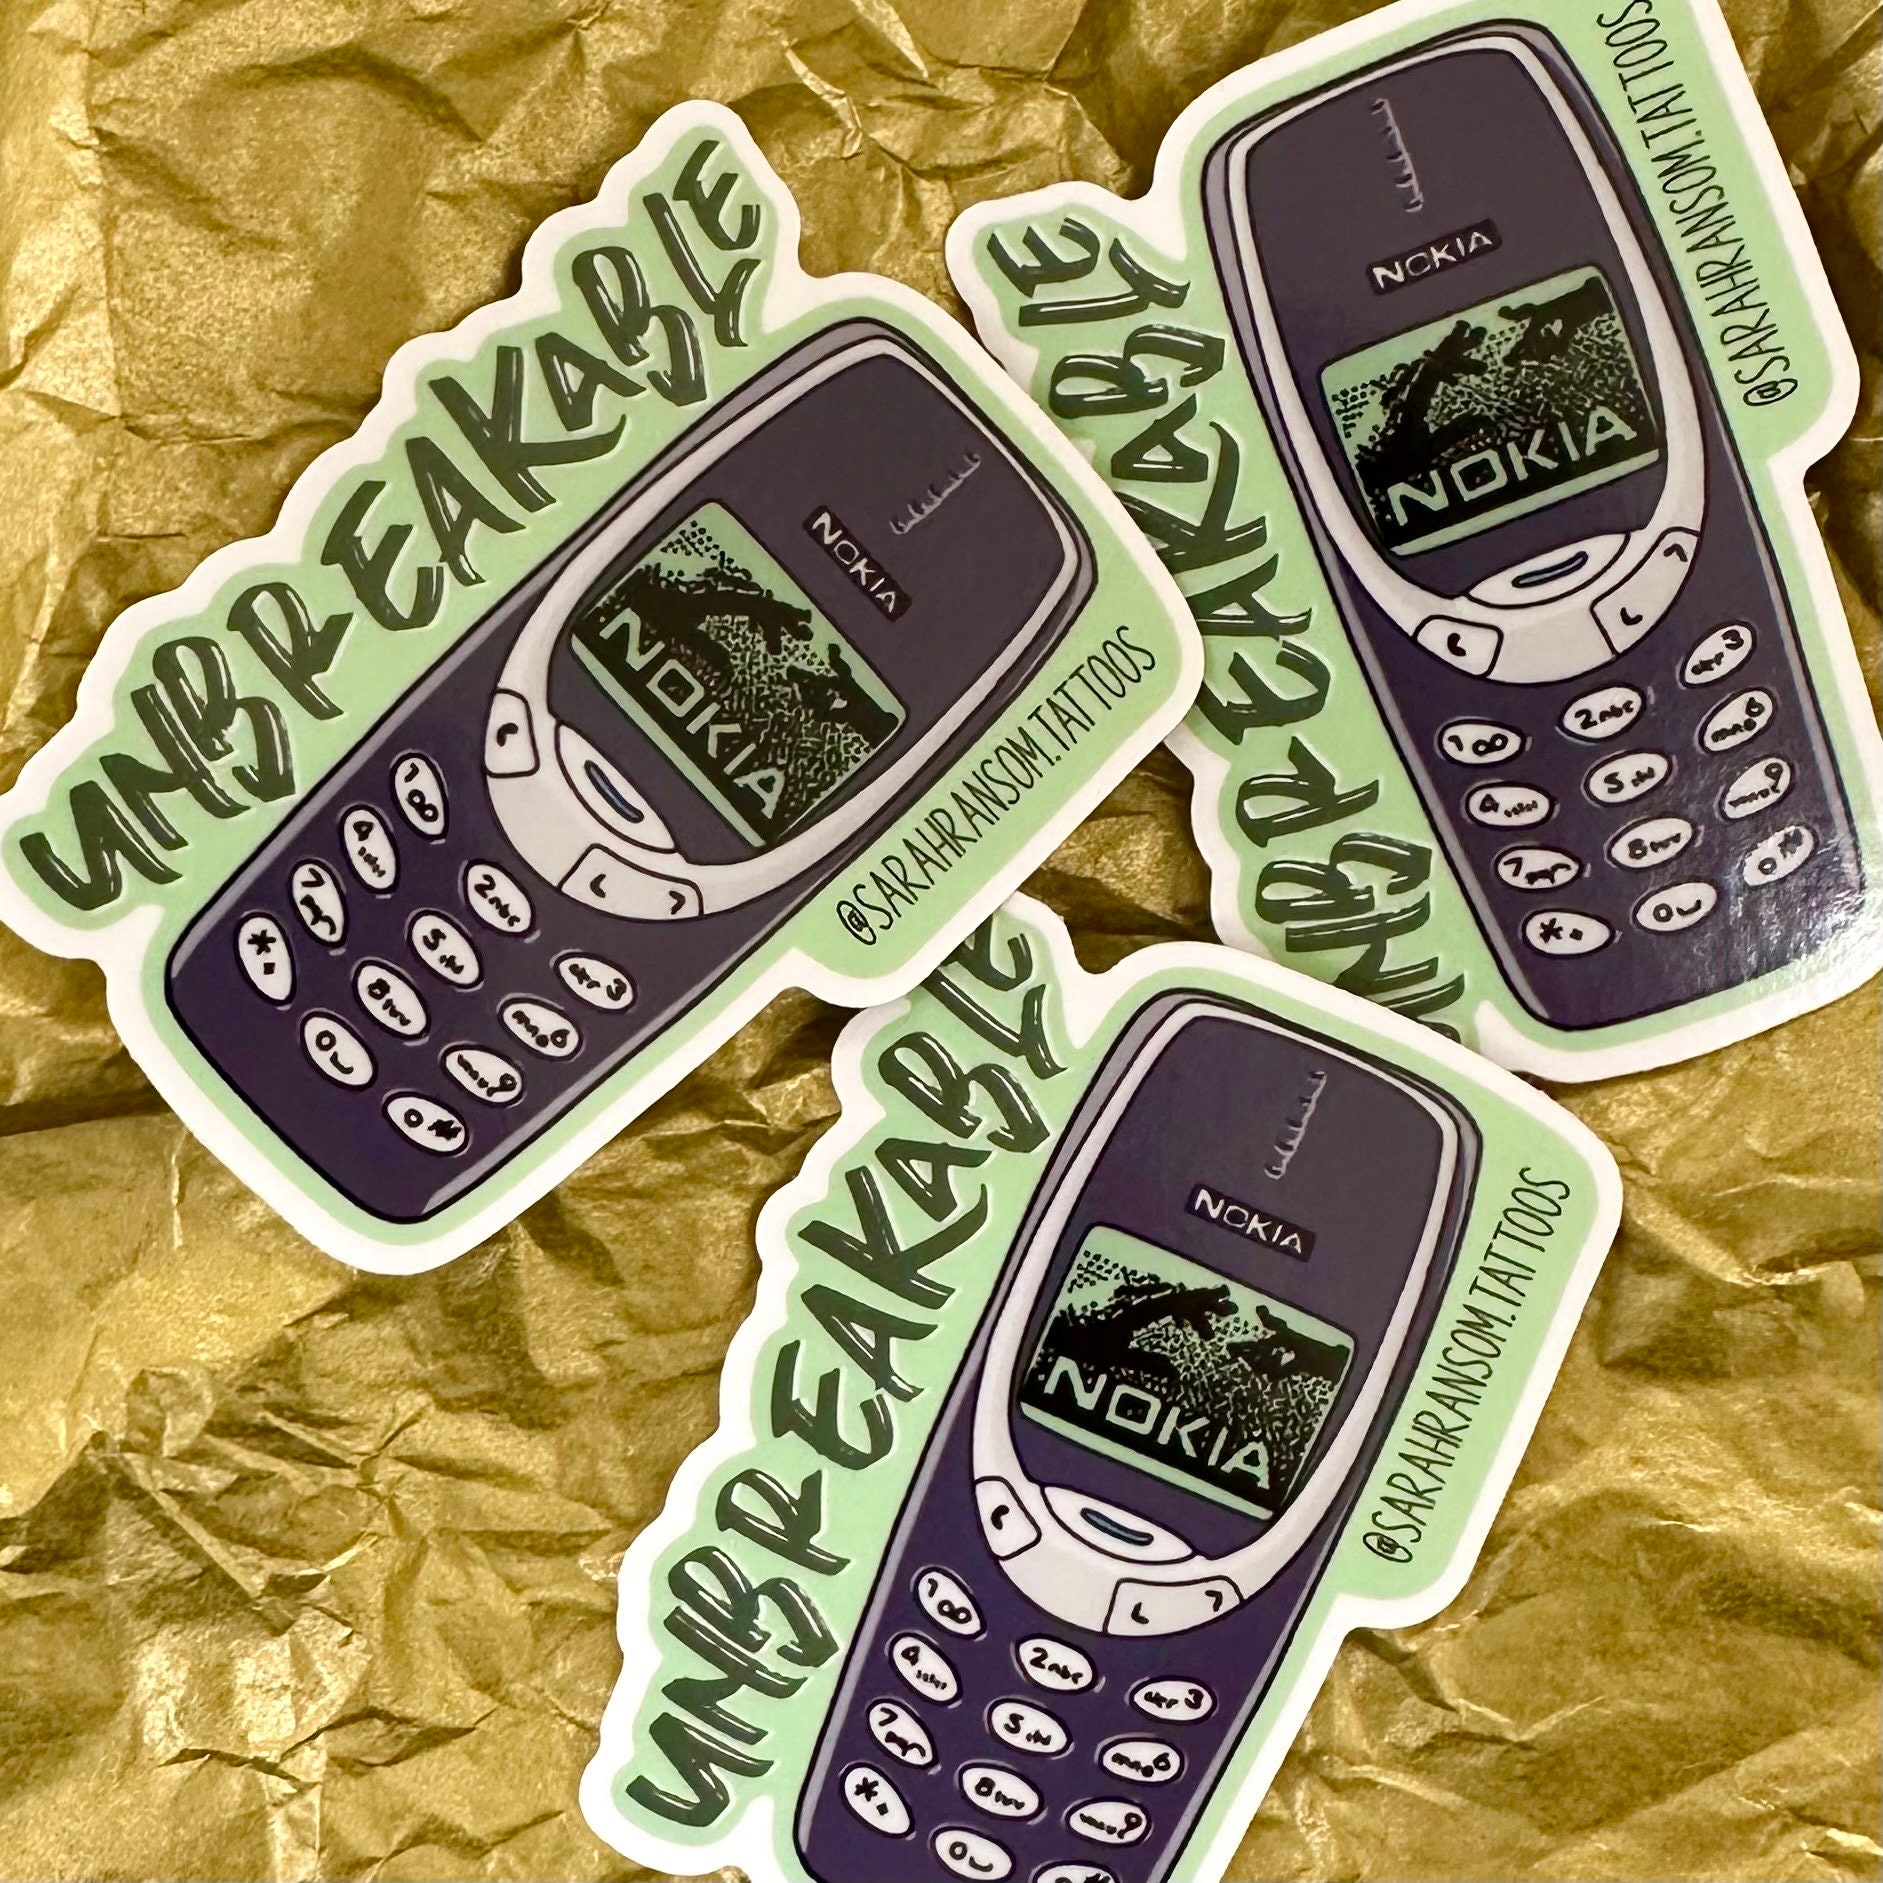 Sticker pour téléphone Nokia cercueil gothique kawaii des années 90,  autocollant de l'an 2000, gothique pastel, nostalgie, téléphone vampire,  chauve-souris kawaii, mords moi, breloque pour téléphone portable -   France